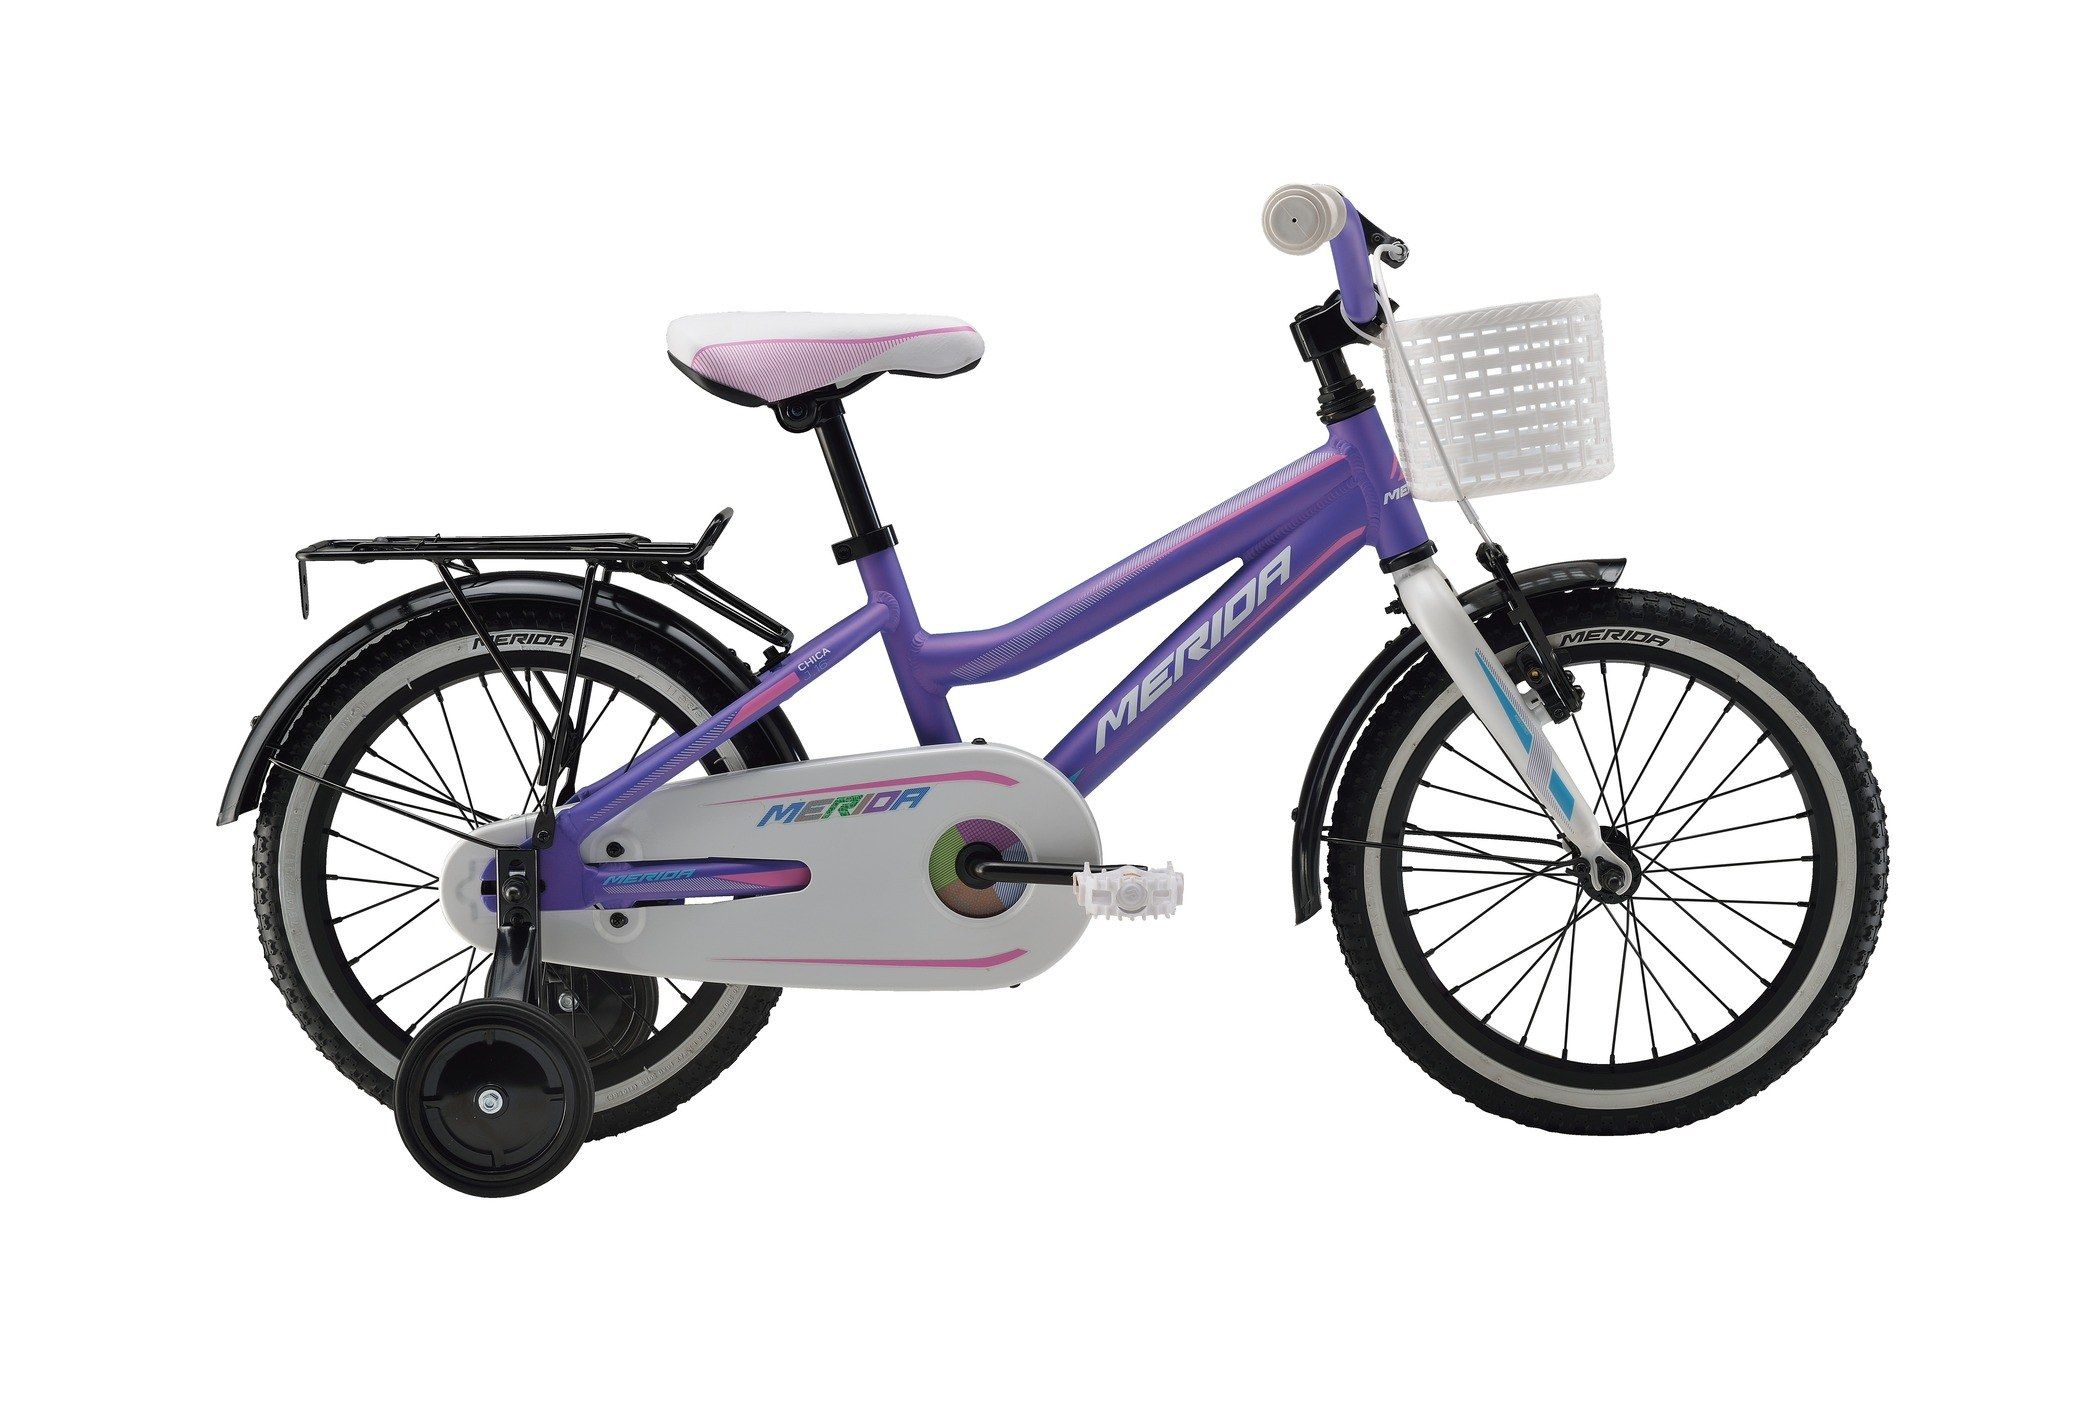  Отзывы о Трехколесный детский велосипед Merida Chica J16 2016